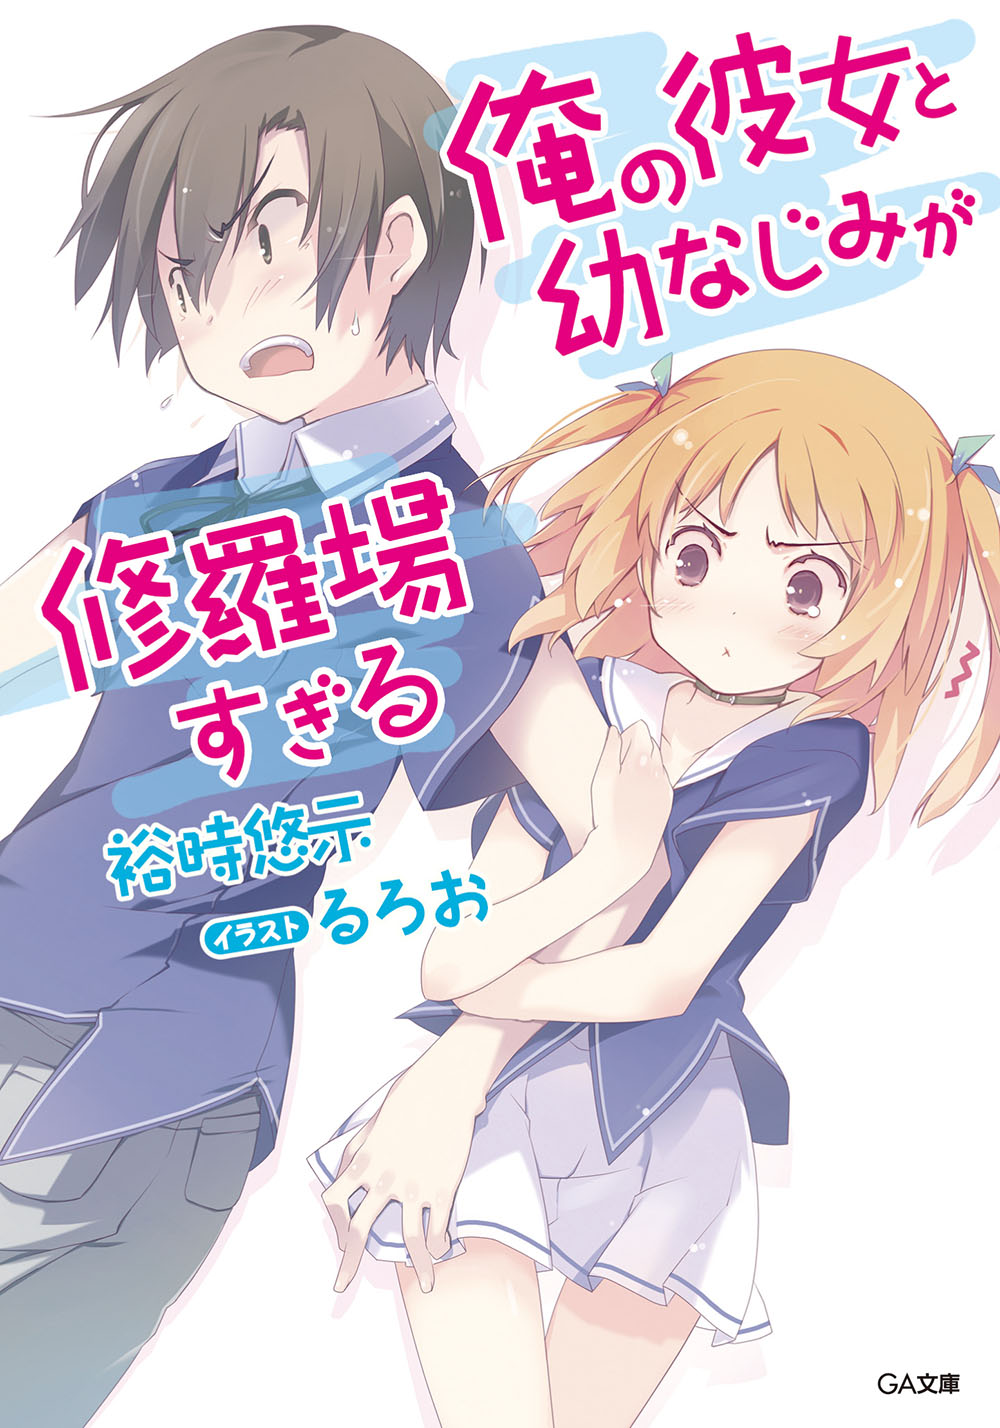 Light Novel Volume 4, Ore no Kanojo to Osananajimi ga Shuraba Sugiru Wiki